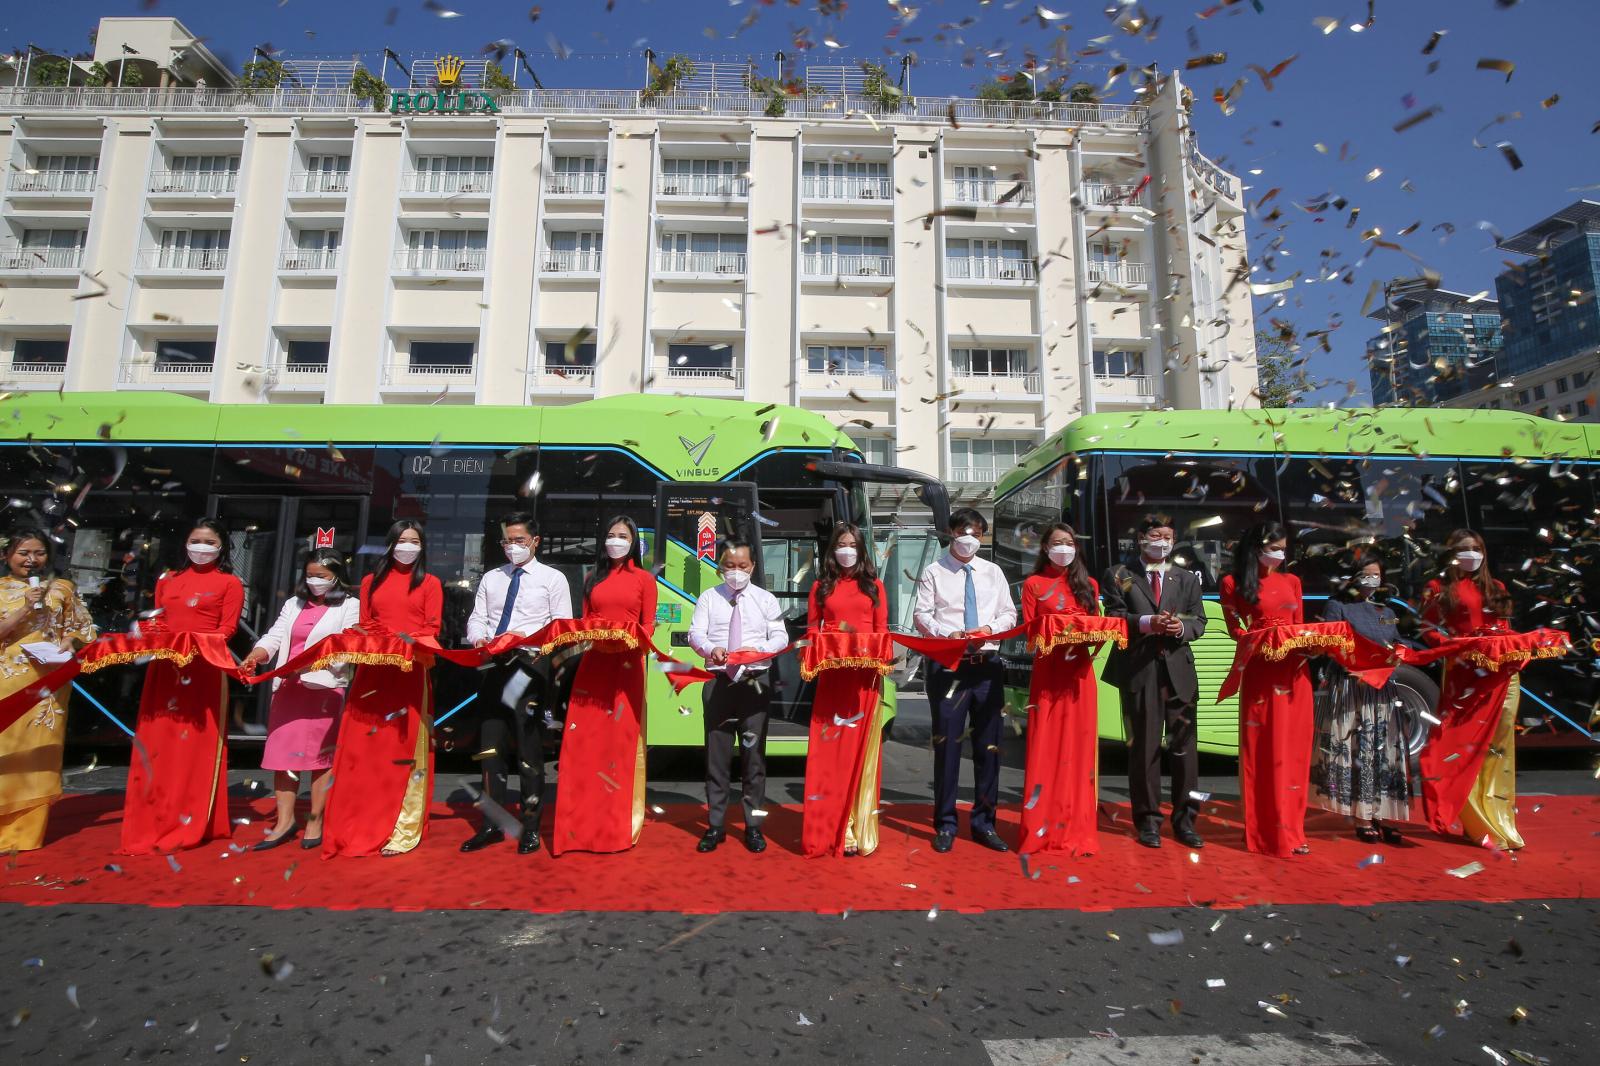 VinBus khai trương tuyến buýt điện đầu tiên kết nối mạng lưới vận tải tại TP. Hồ Chí Minh 1